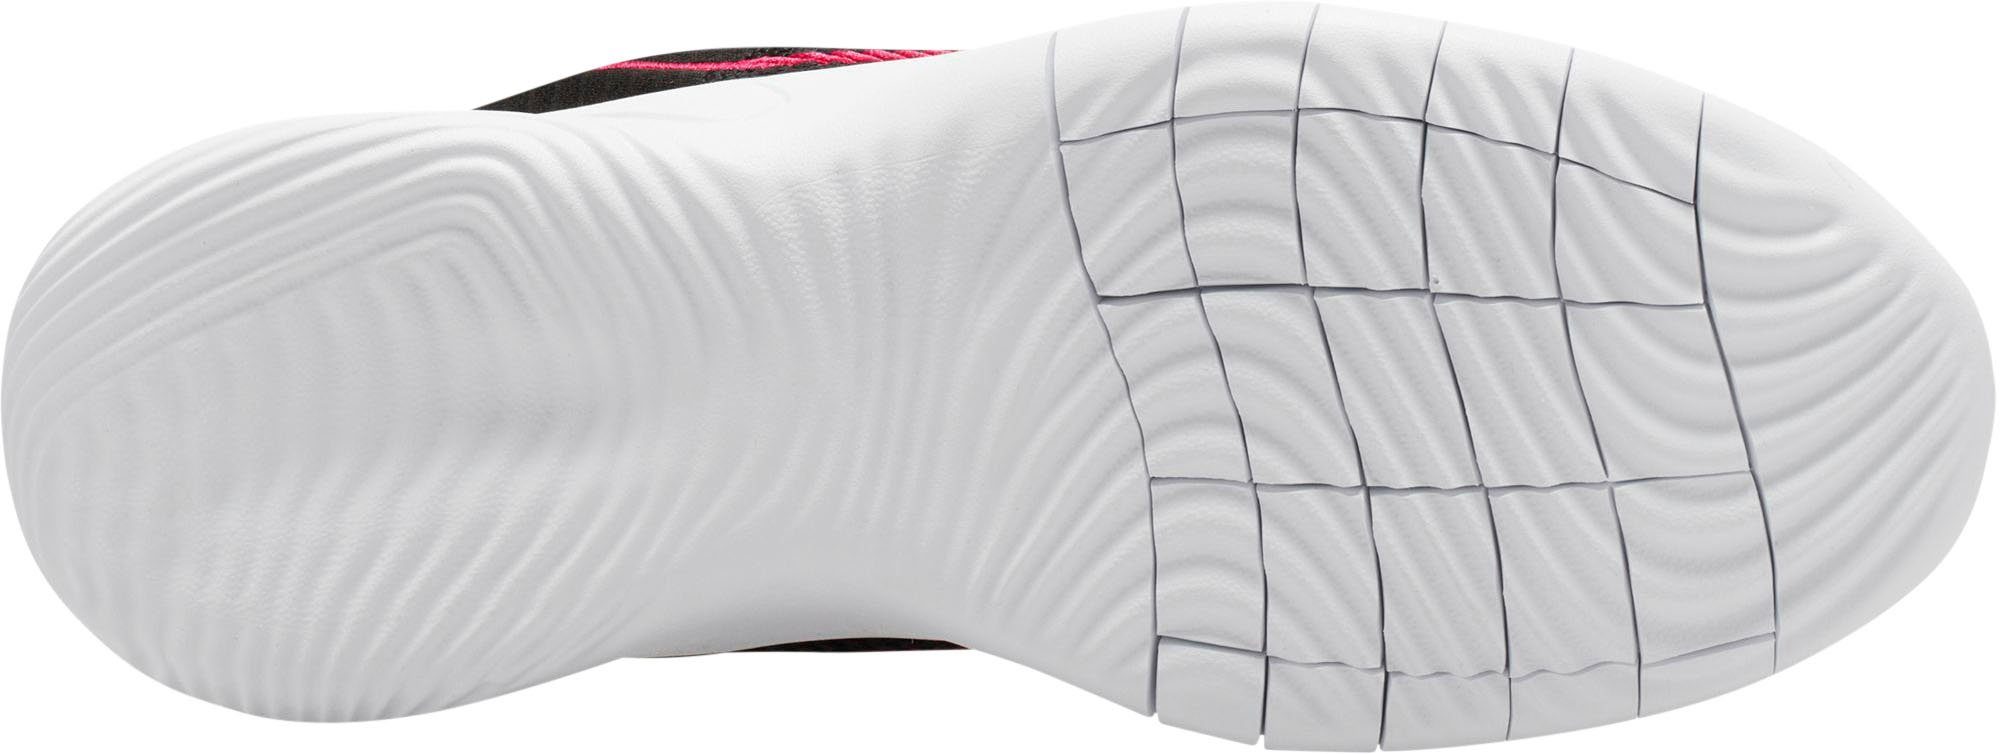 RUN NEXT FLEX Nike EXPERIENCE Laufschuh schwarz-pink NATURE 11